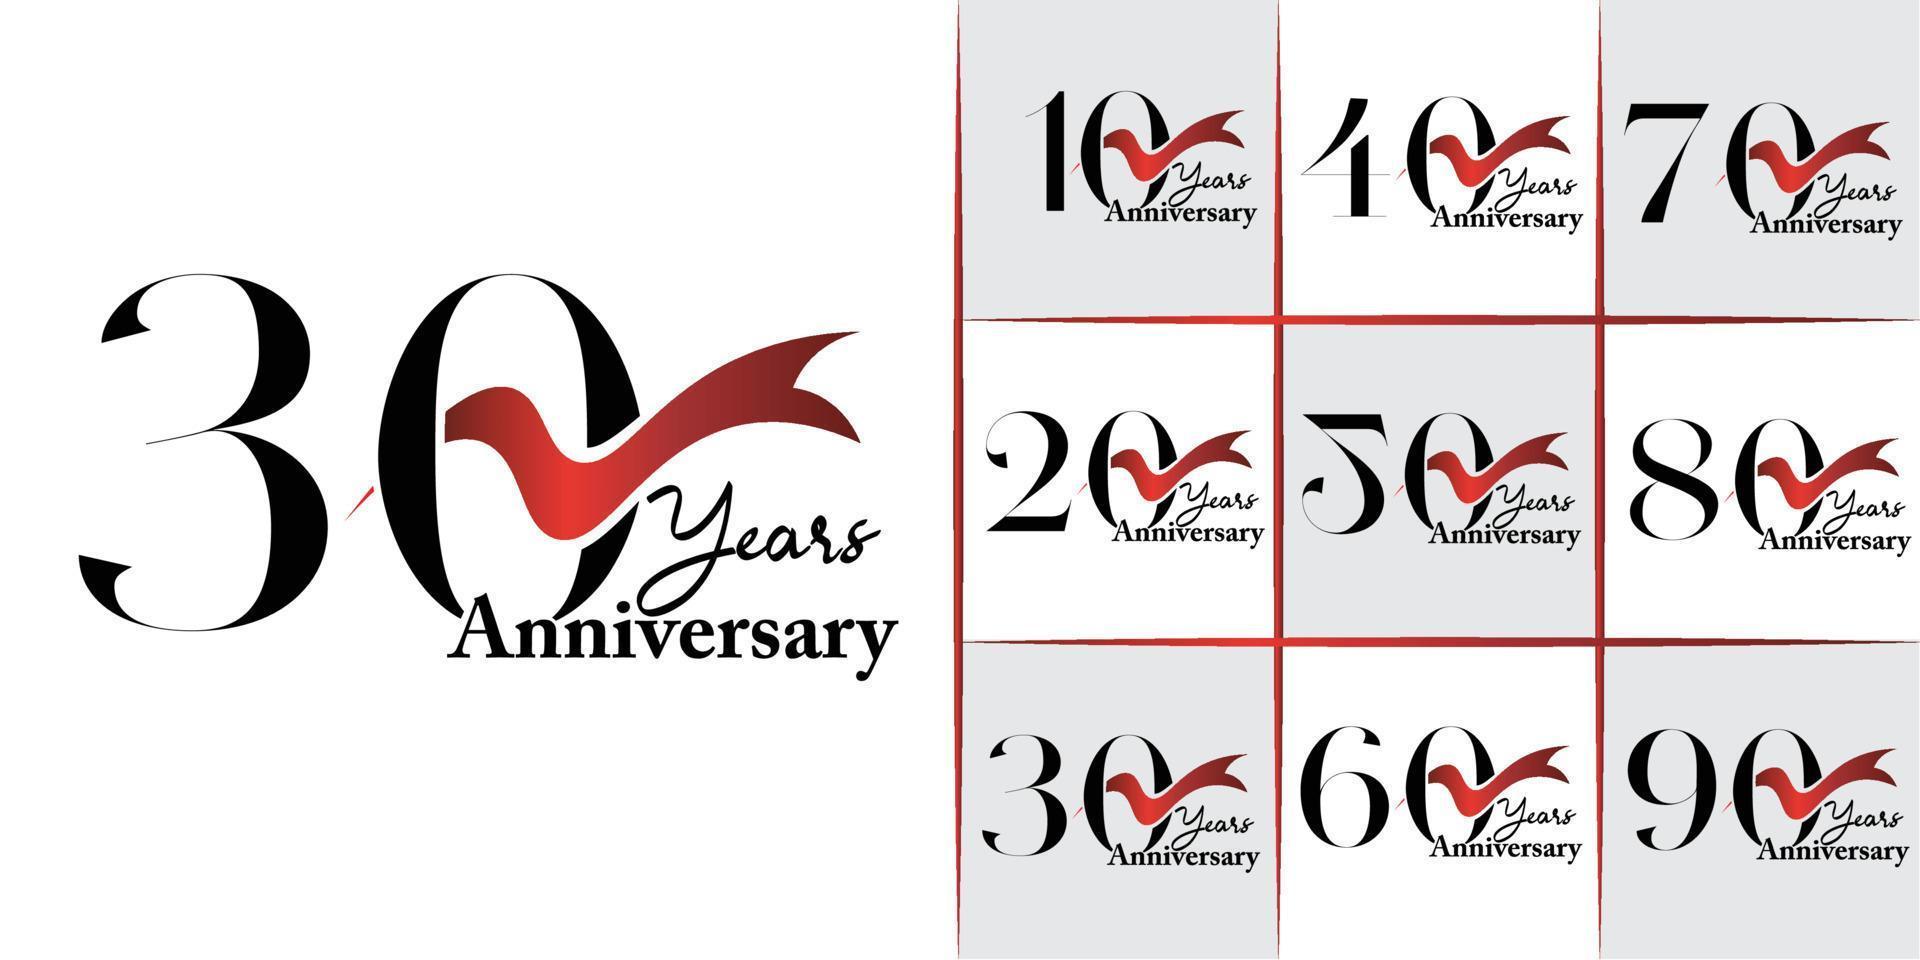 10e - 90e ensemble de conception d'emblèmes d'anniversaire avec ruban rouge, conception de modèle d'anniversaire pour le web, jeu, affiche créative, livret, dépliant, dépliant, magazine, carte d'invitation vecteur